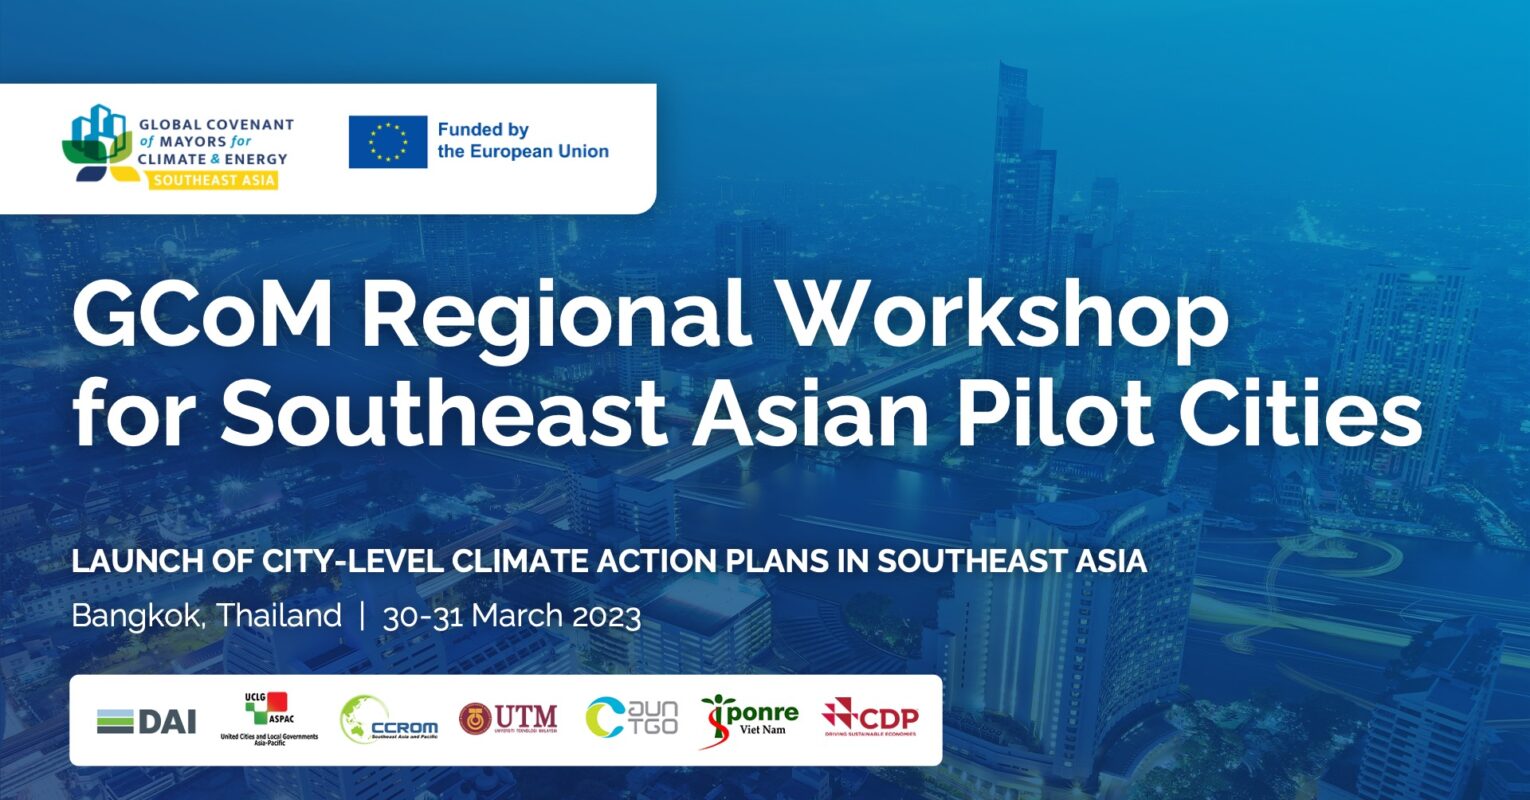 Southeast Asia Pilot Cities Launch Ambitious Climate Action Plans